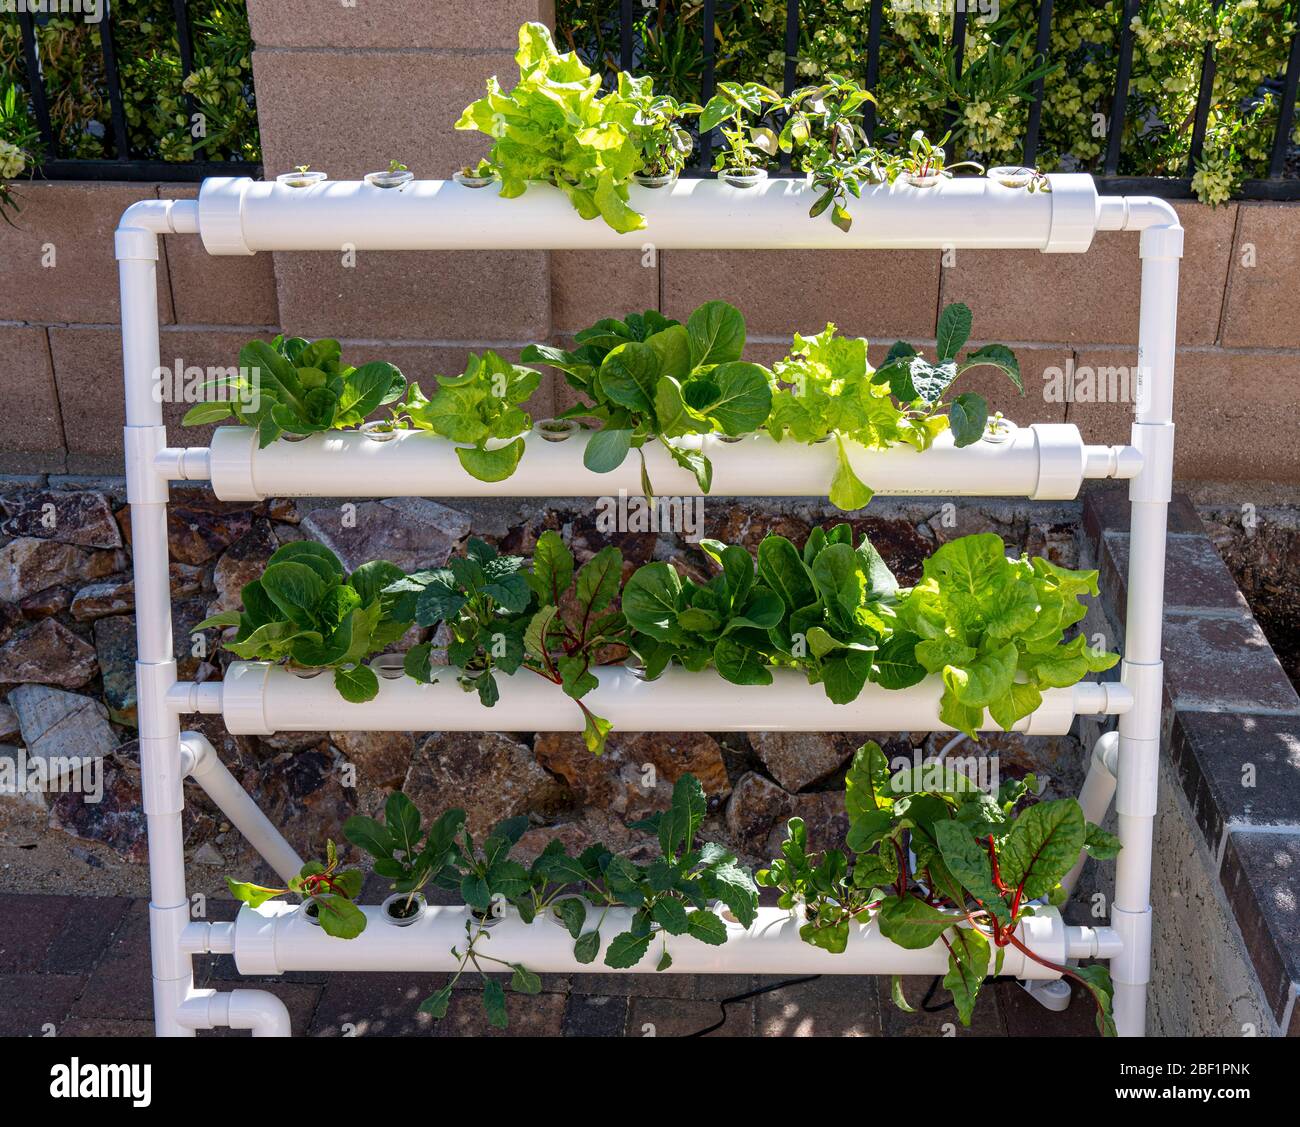 Vertikale hydroponische Gemüseanbau Setup mit Grüns in verschiedenen Stadien des Wachstums Stockfoto